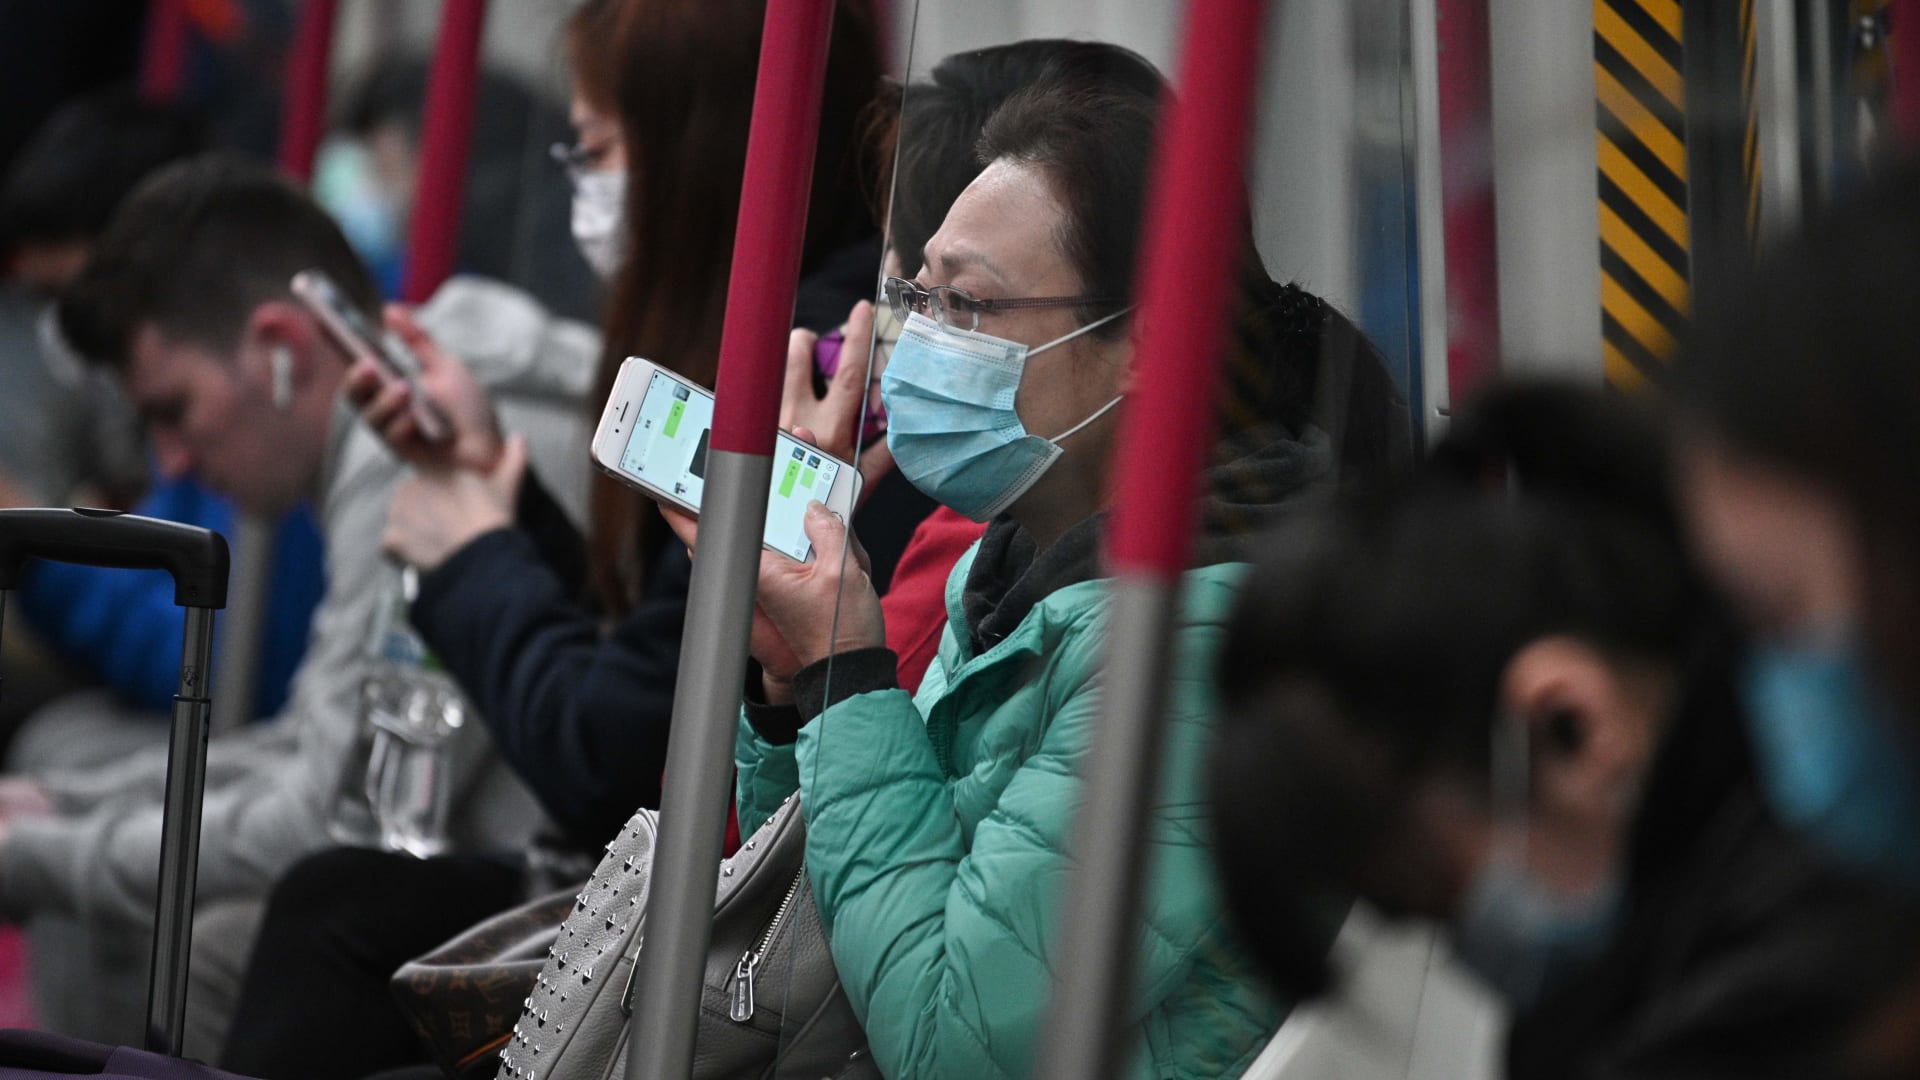 فيروس كورونا.. الصين تتهم الولايات المتحدة بـ "تشجيع الهلع"